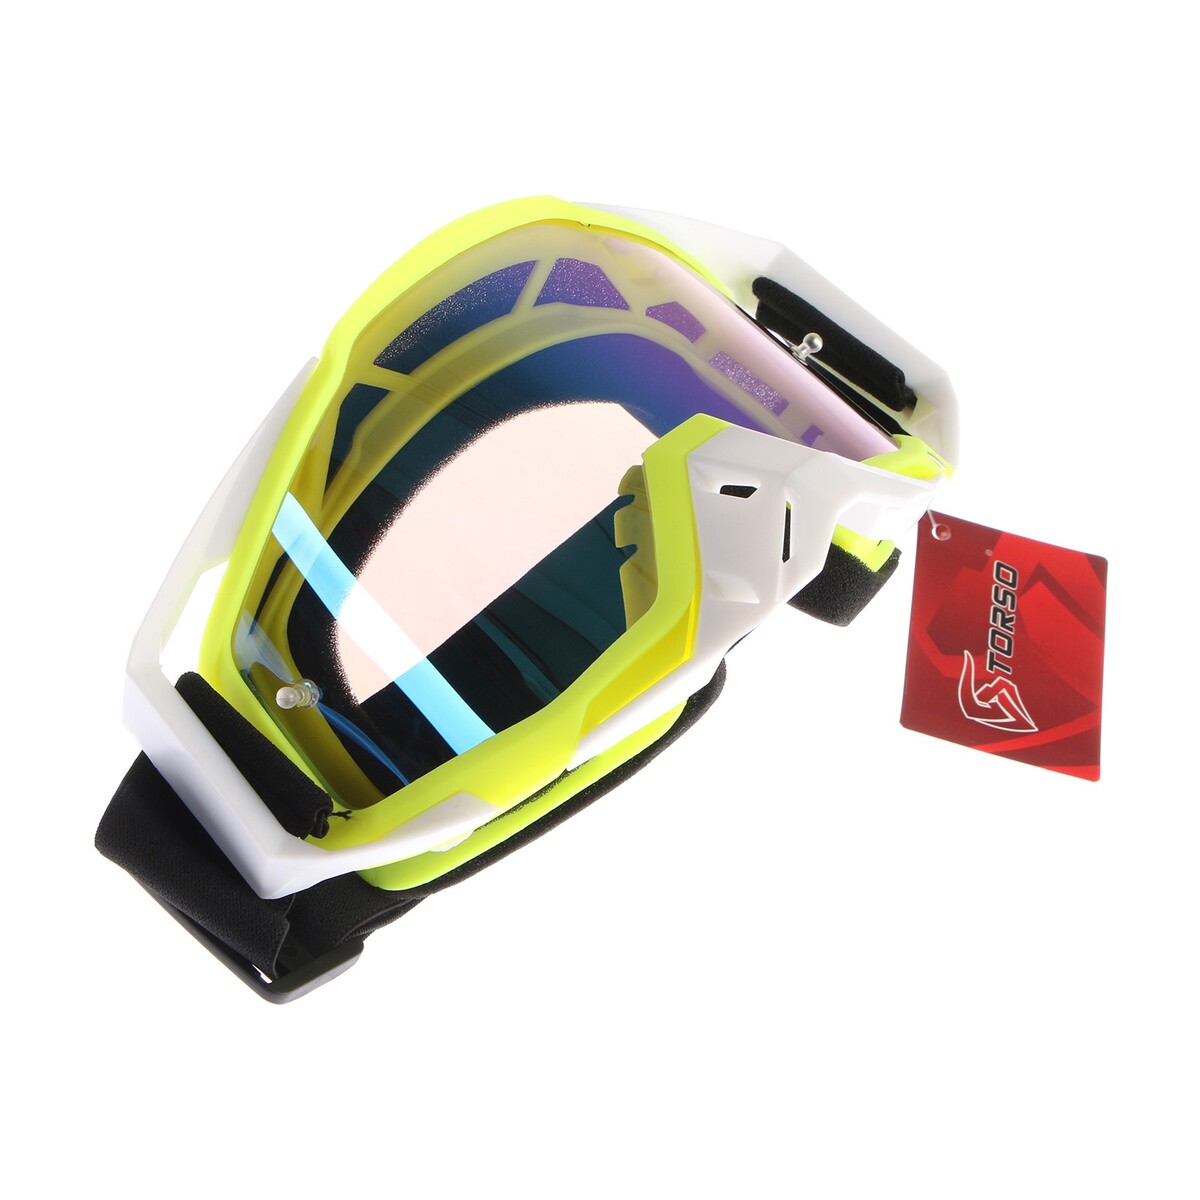 Очки-маска для езды на мототехнике, стекло синий хамелеон, цвет желтый-белый, ом-1 очки маска для езды на мототехнике разборные визор желтый